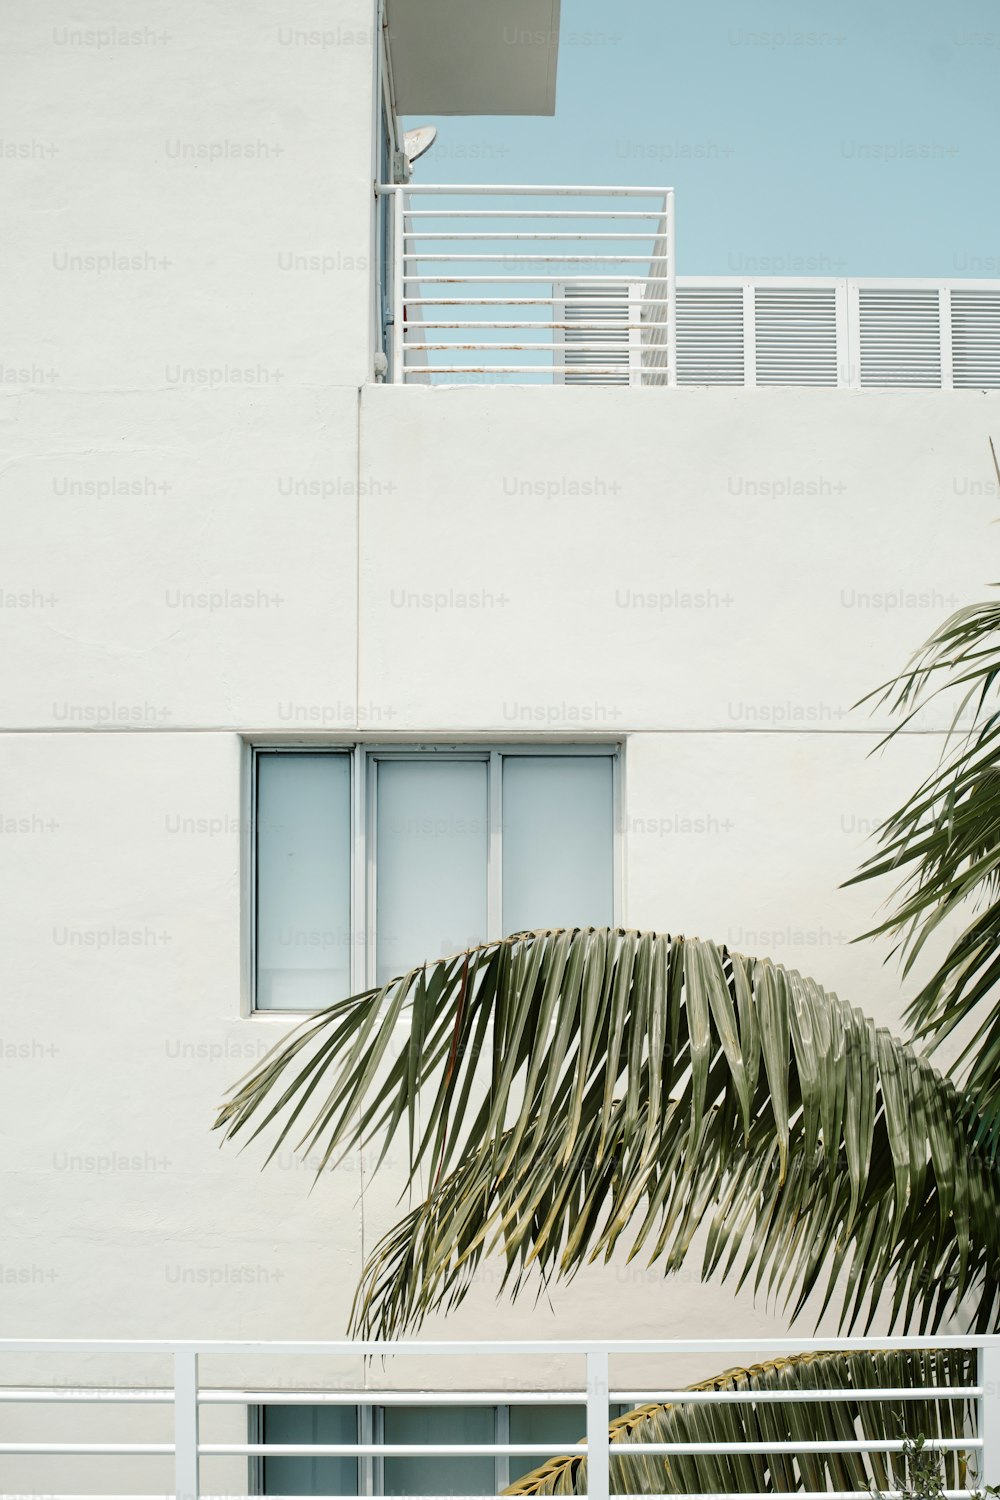 Ein weißes Gebäude mit einer Palme davor